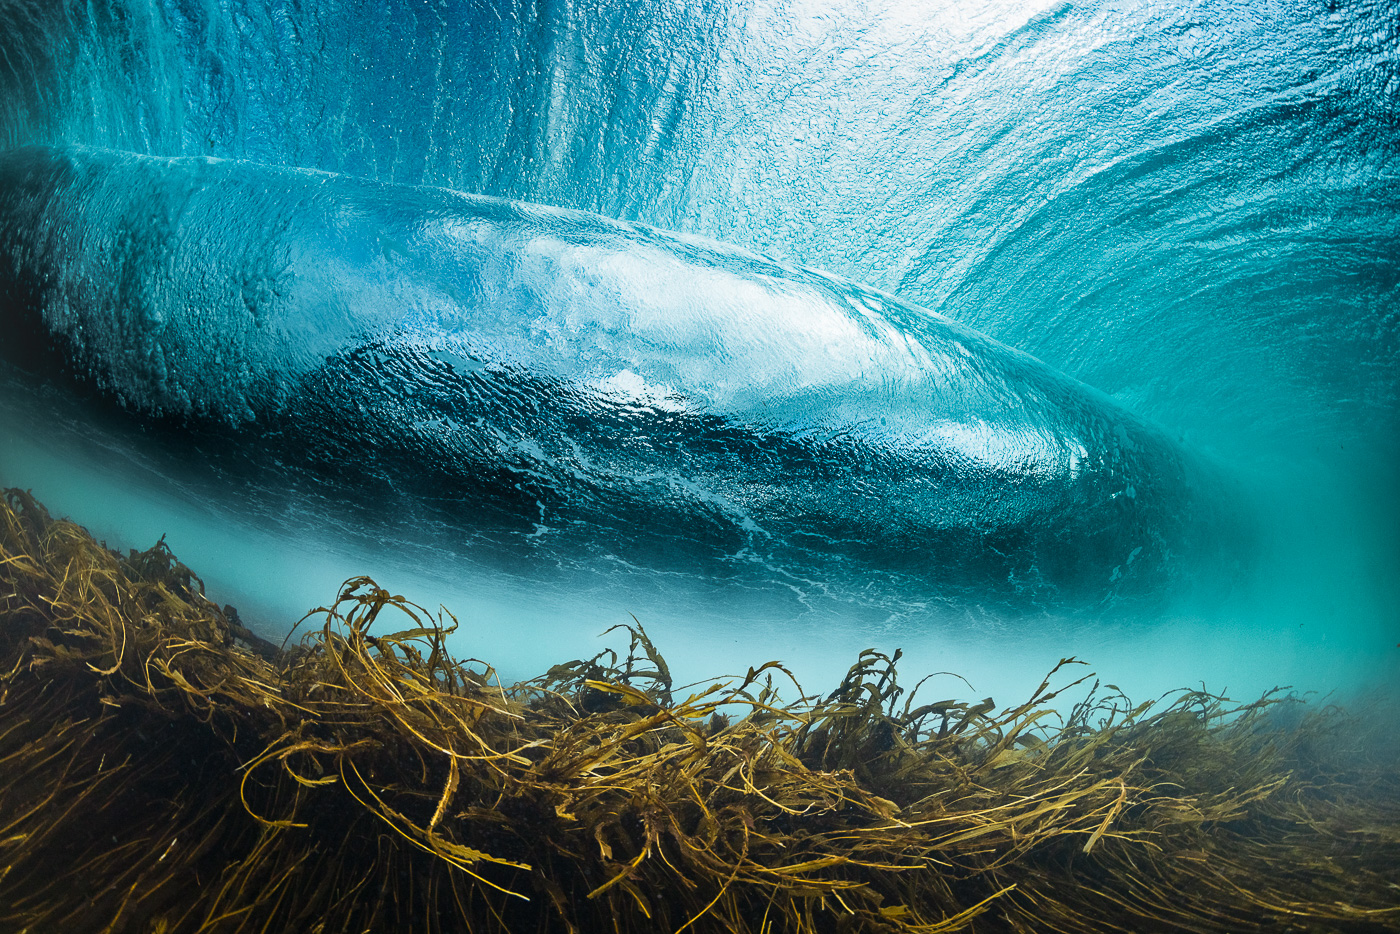 Rileys underwater with seaweed